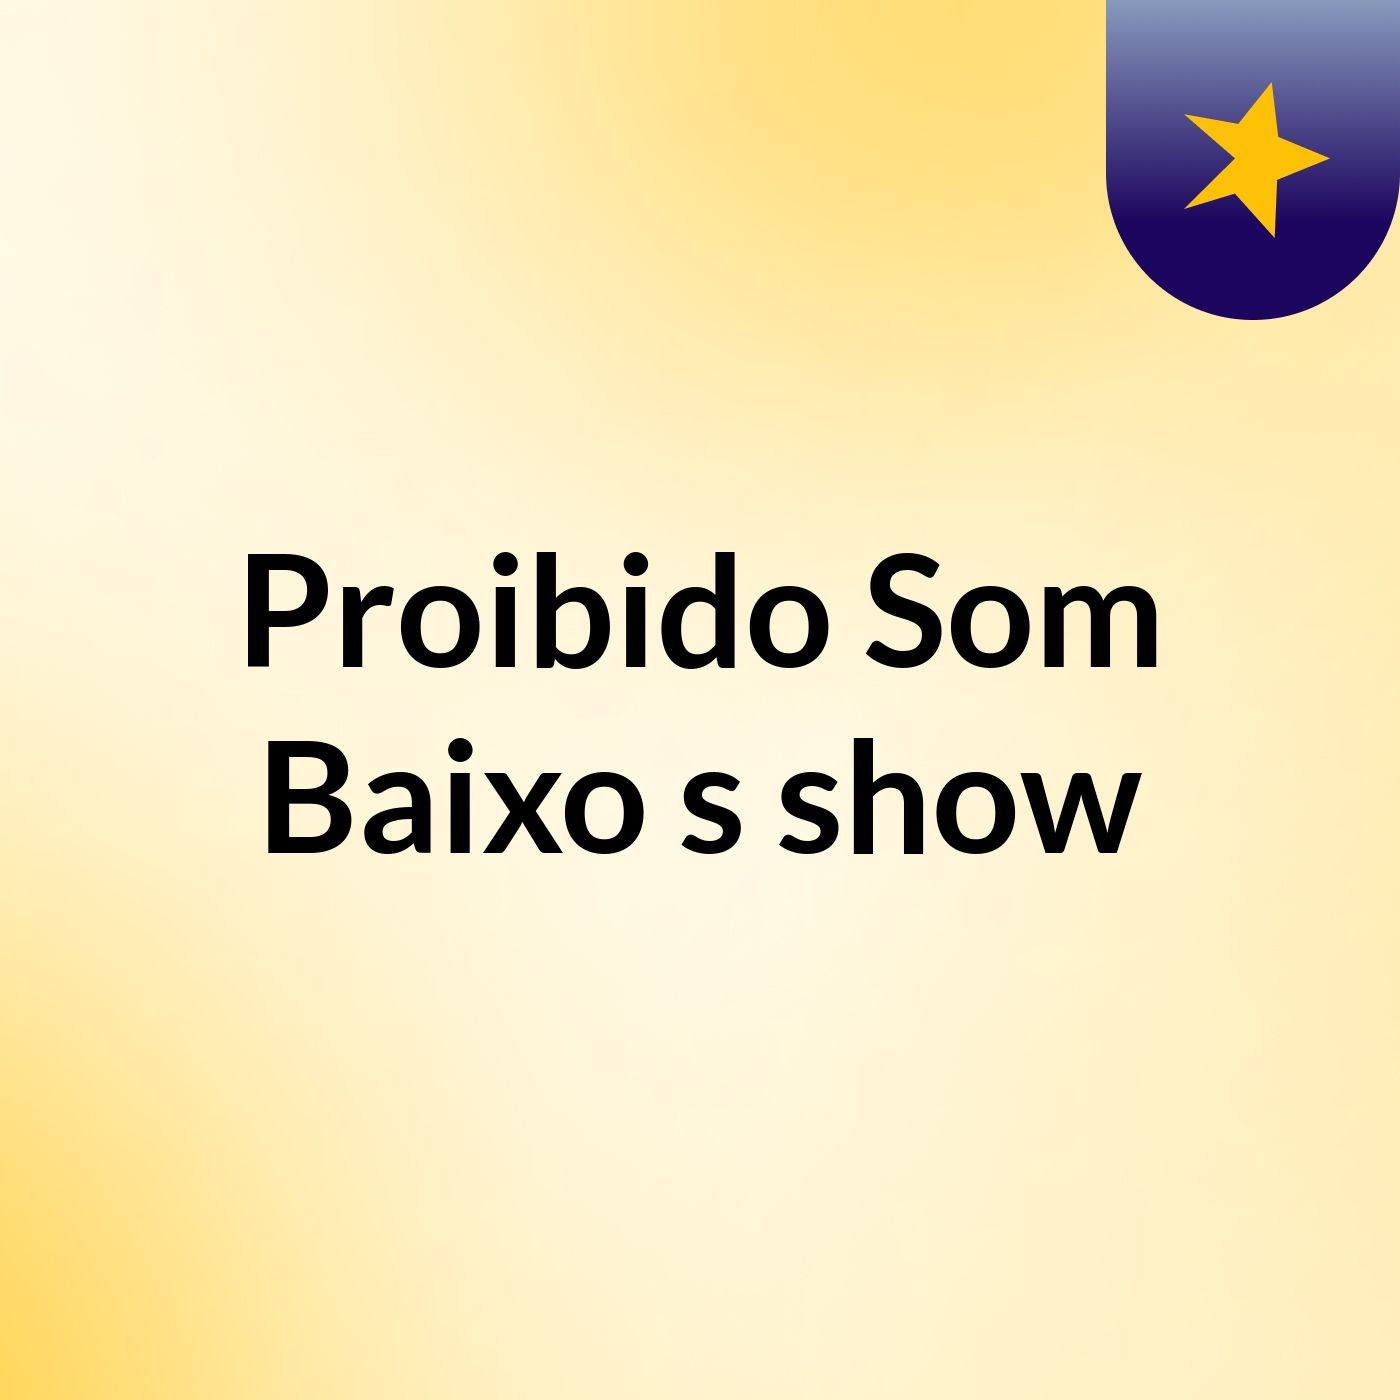 Proibido Som Baixo's show